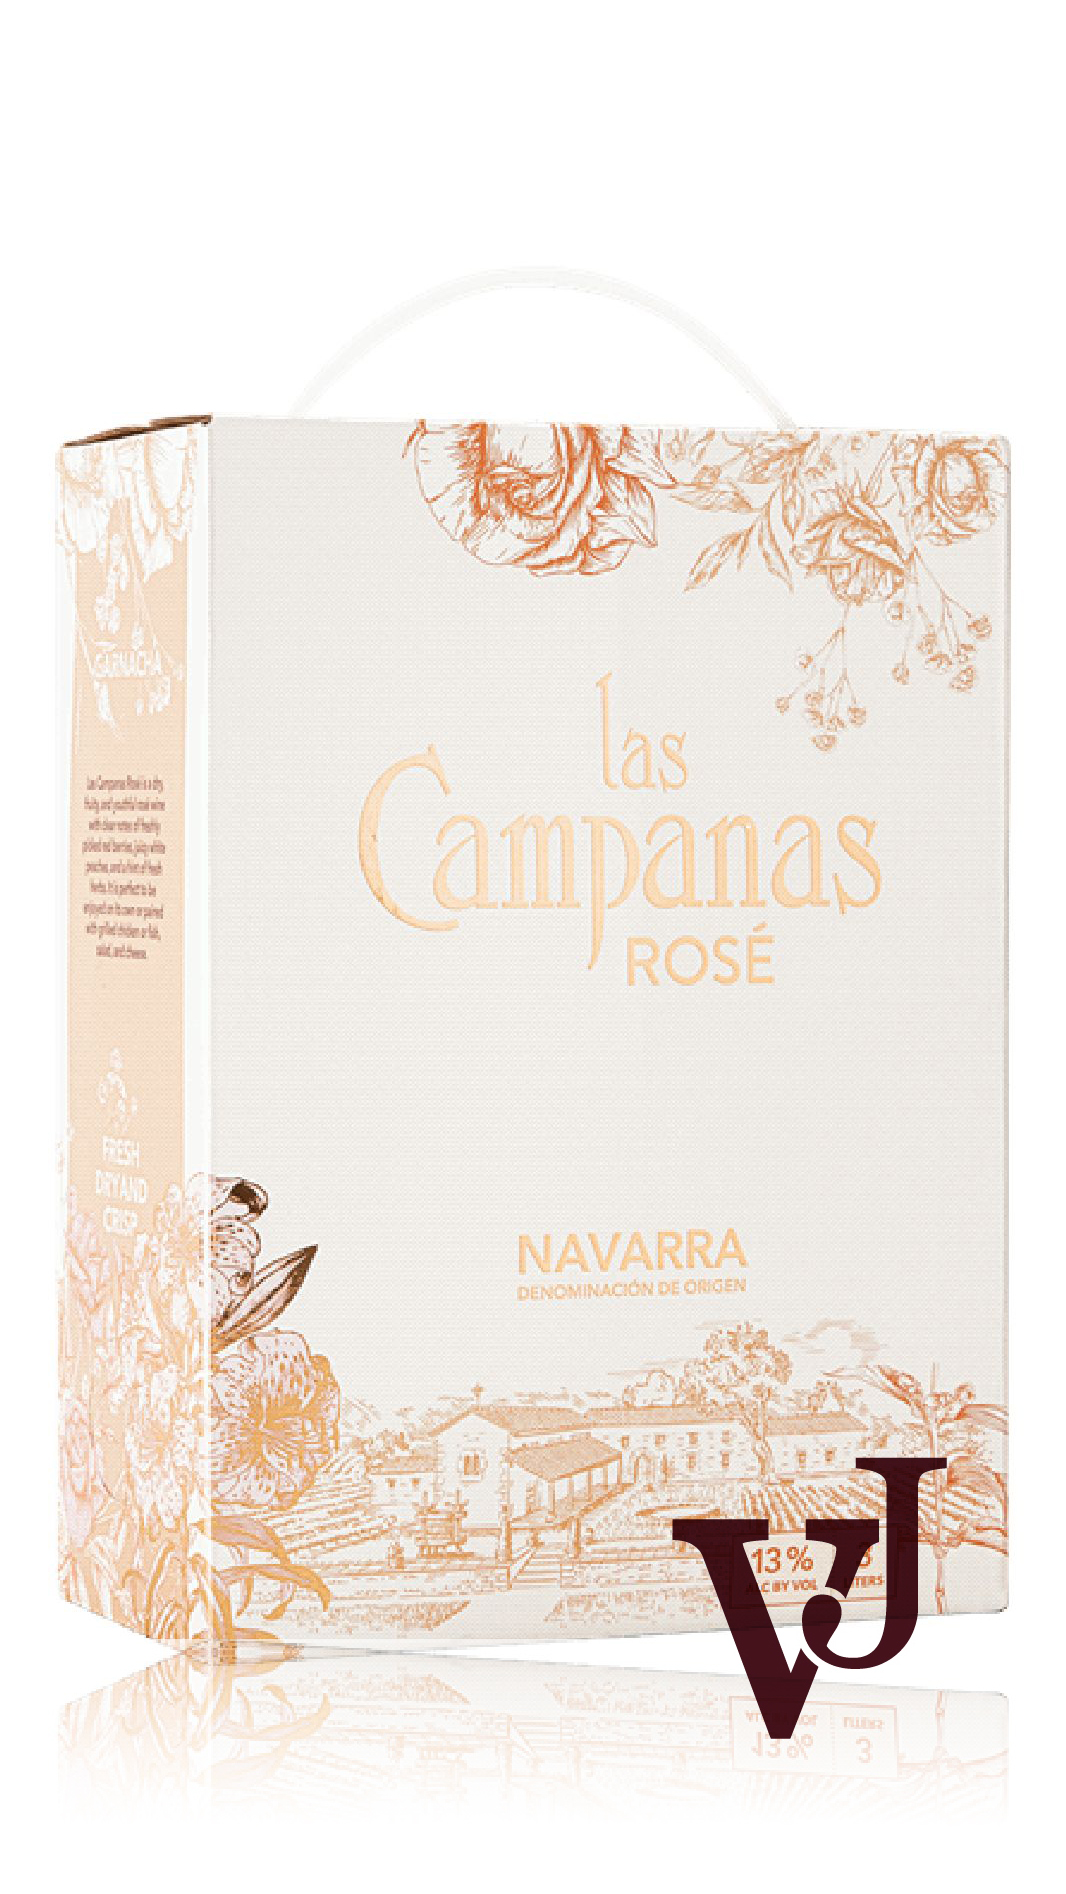 Rosé Vin - Las Campanas Navarra Rosé 2022 artikel nummer 114208 från producenten Bodegas Manzanos från området Spanien